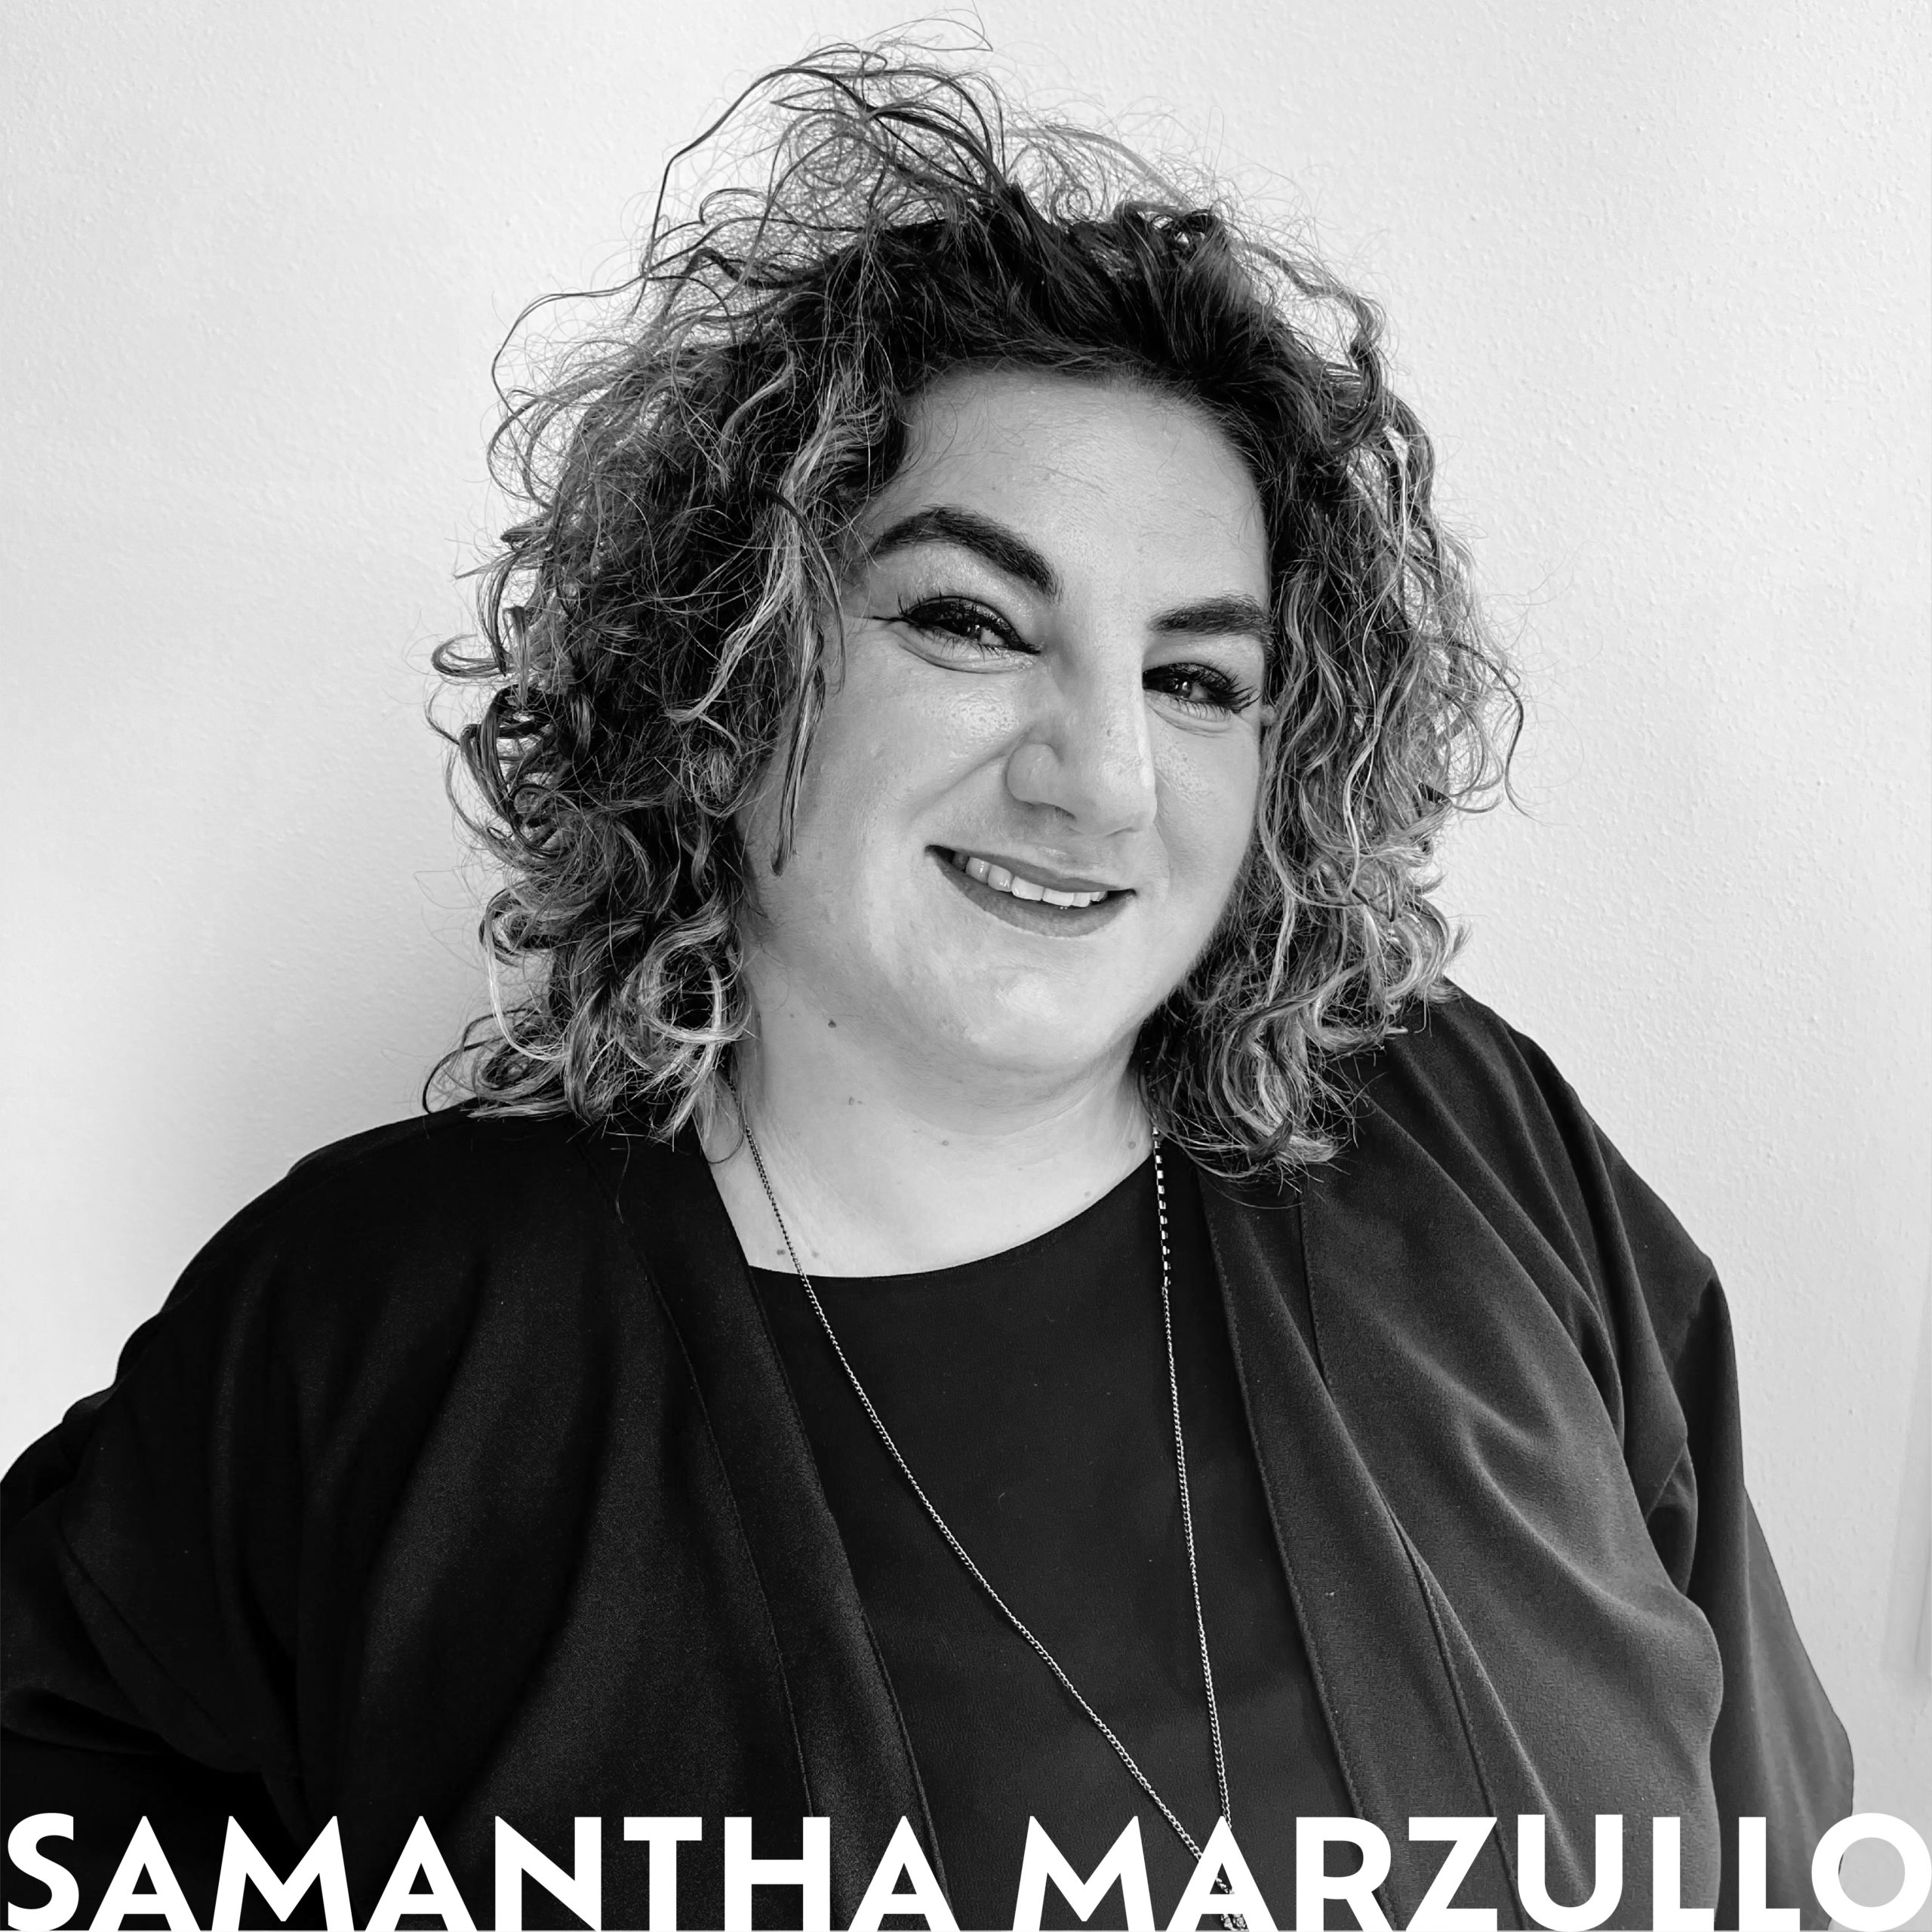 Samantha Marzullo